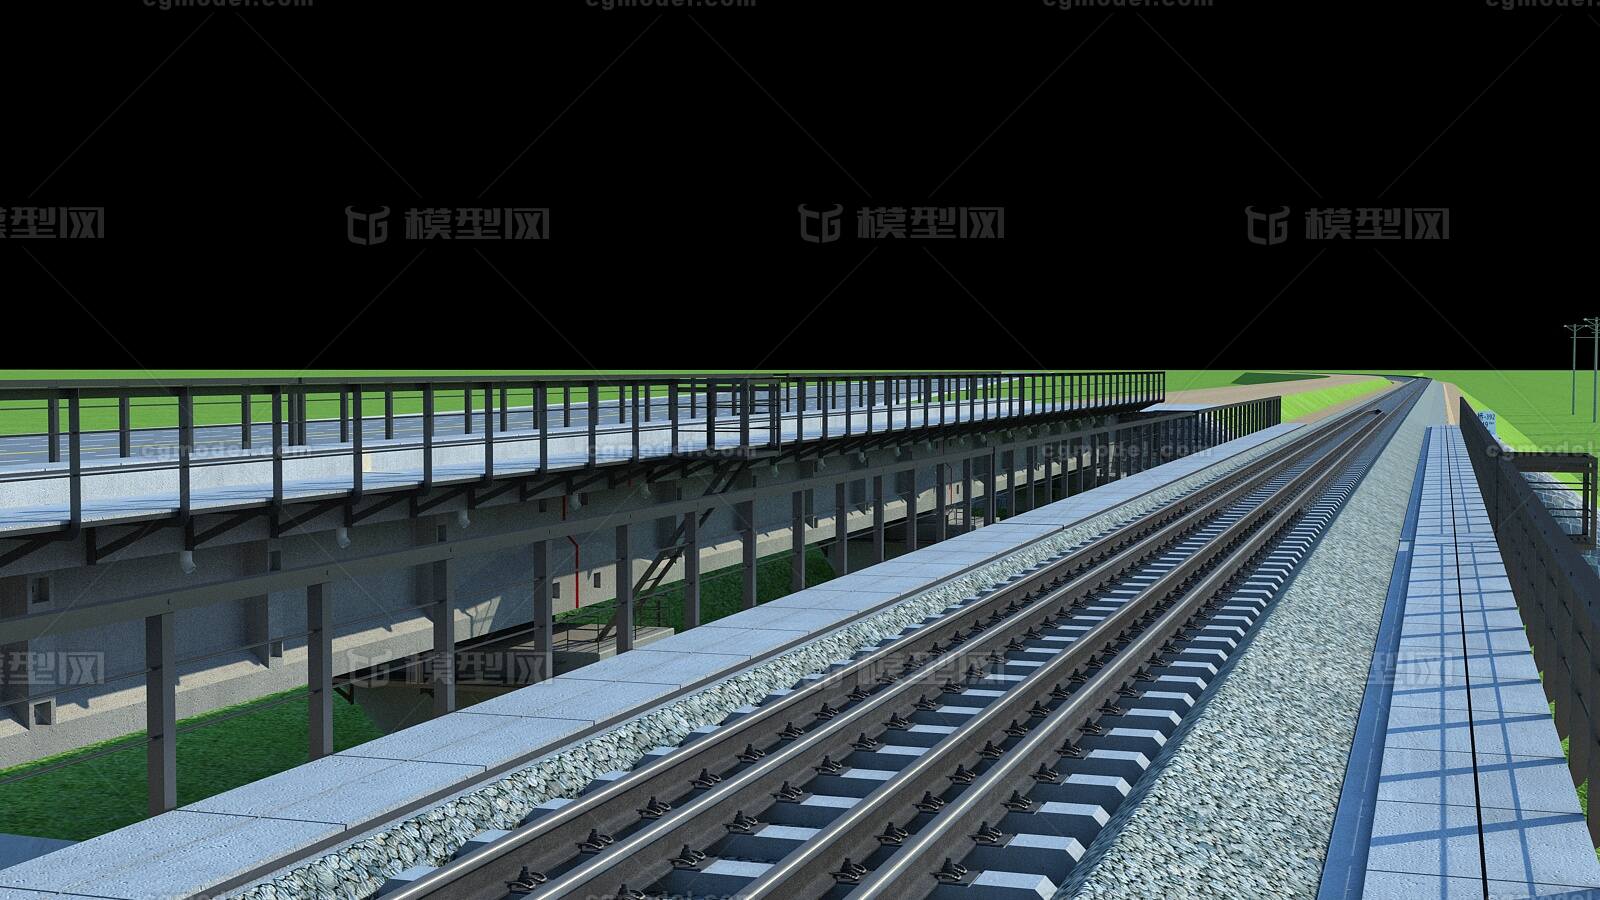 铁路桥的构造分的比较清晰,方便大家理解,当然用作施工动画场景再好